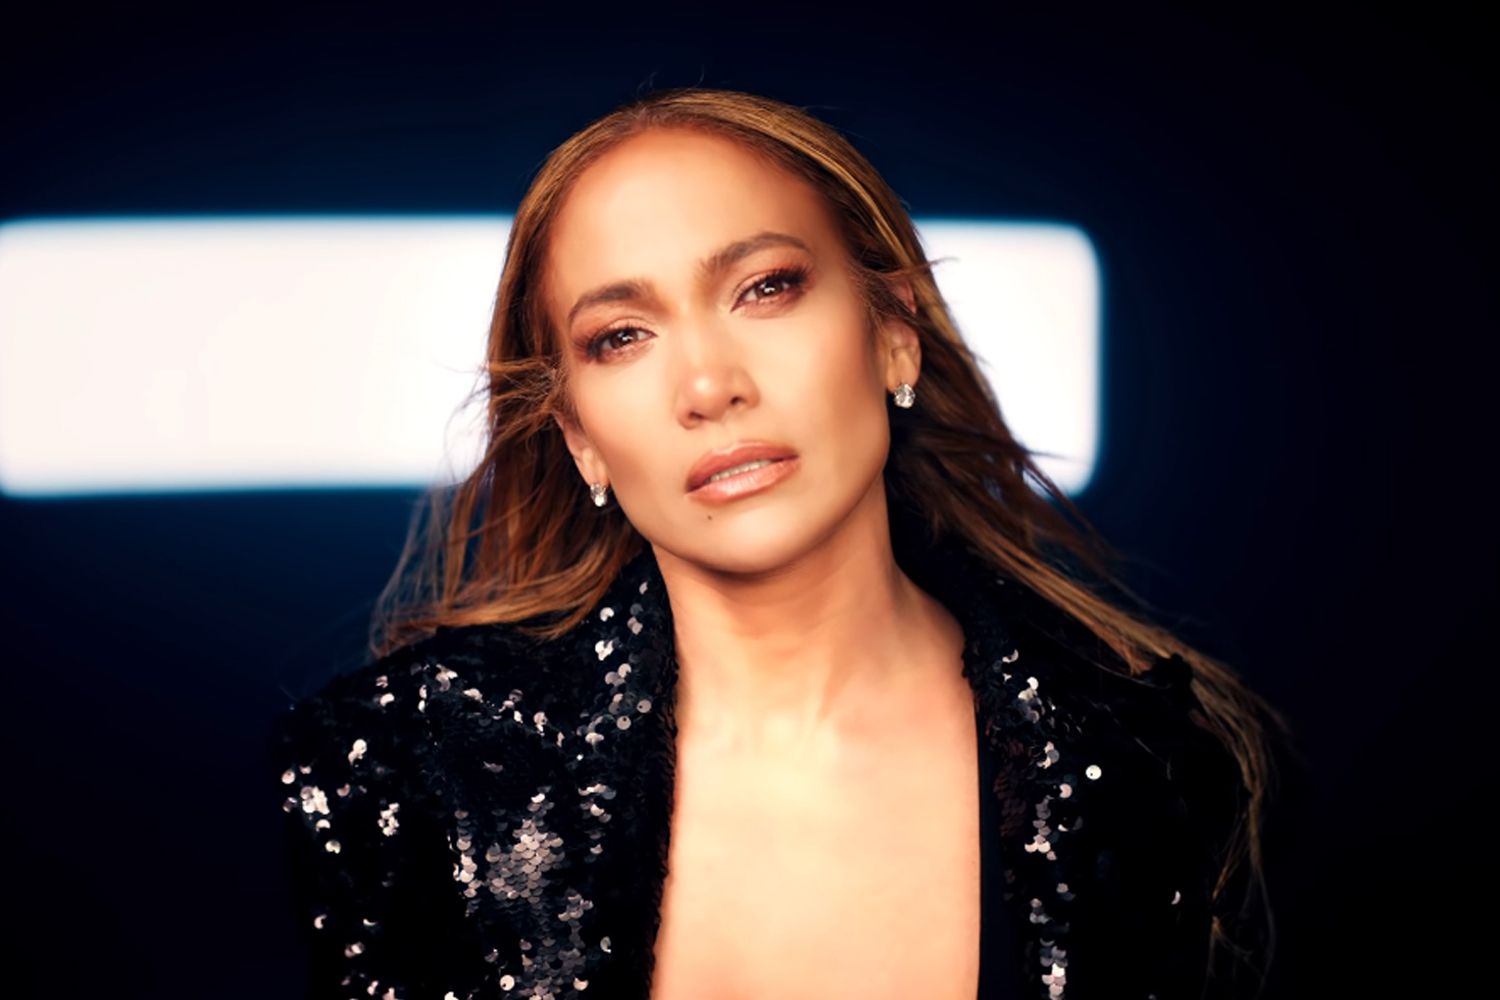 Albumi dhe turneu i rikthimit nuk patën suksesin që pritej, Jennifer Lopez në krizë financiare!